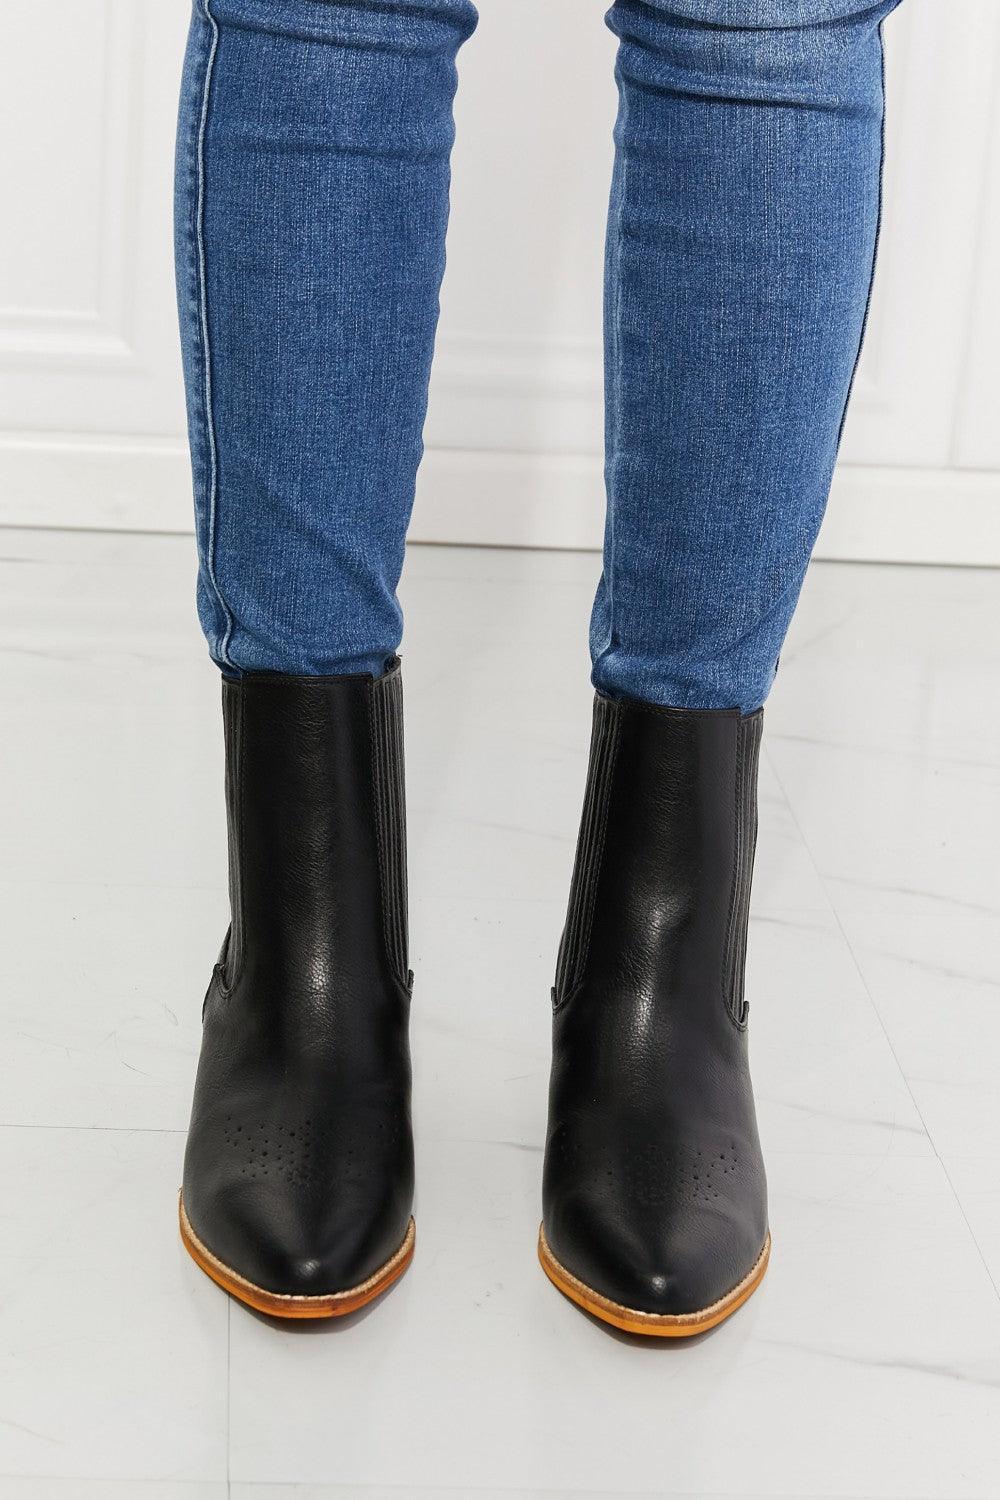 MMShoes PU Leather Heel Womens Black Chelsea Boots - MXSTUDIO.COM